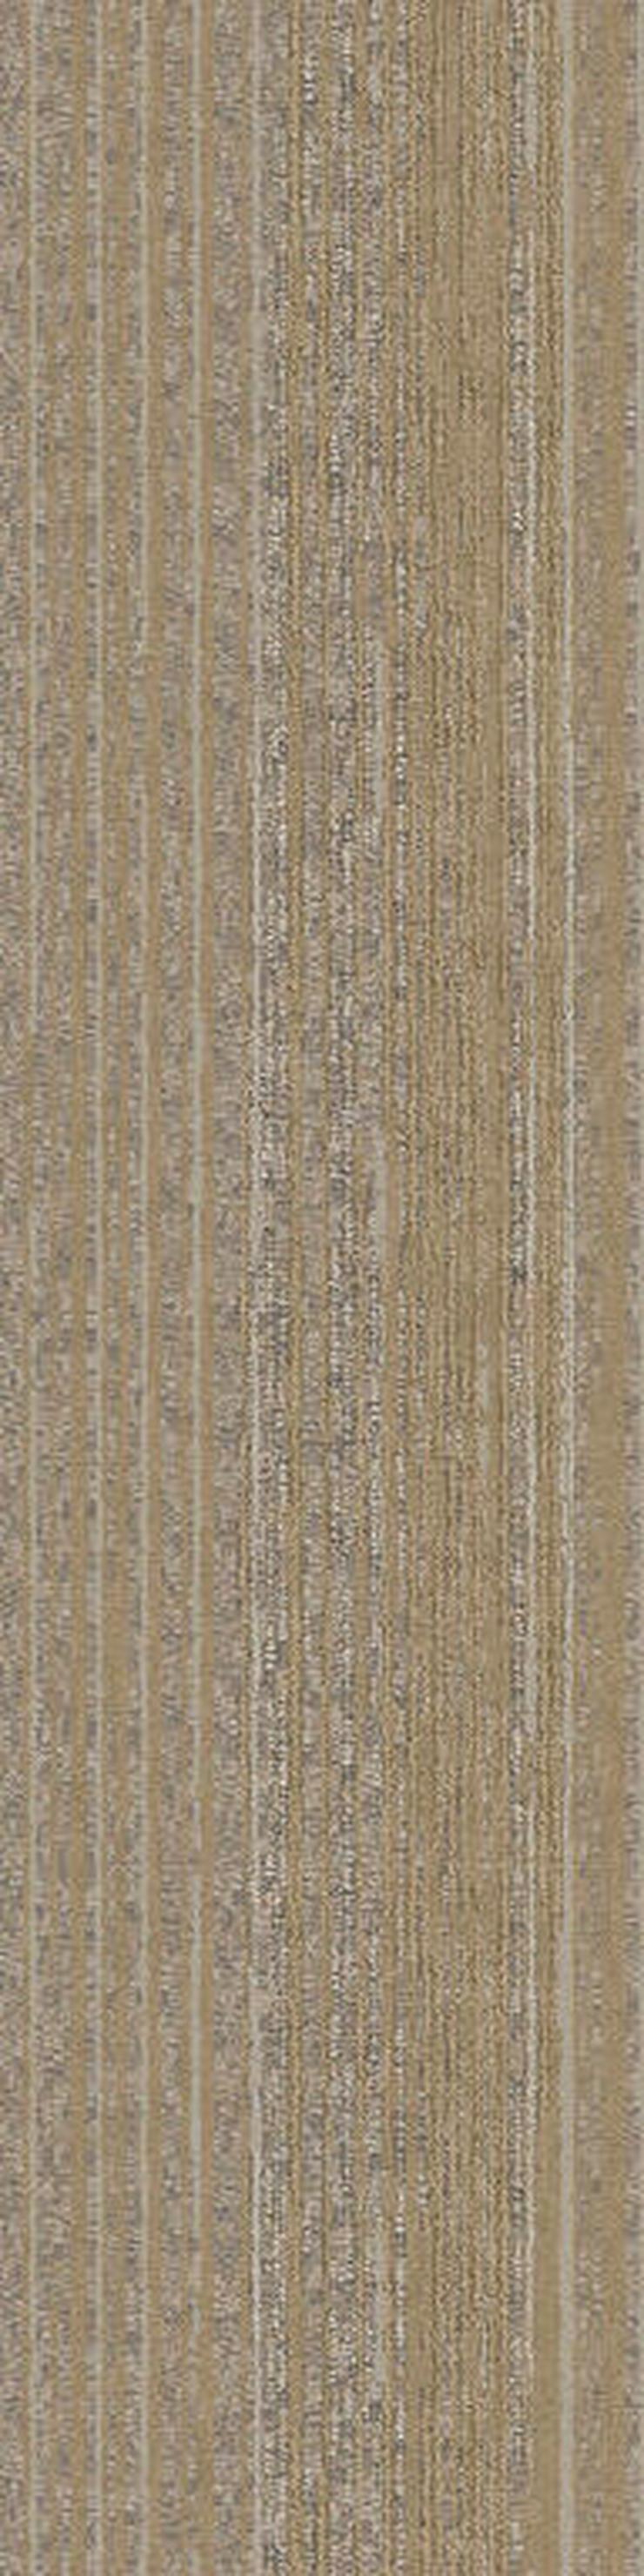 Bild 15: Schöne leichte 25X100cm Teppichfliesen. Auch in anderen Farben